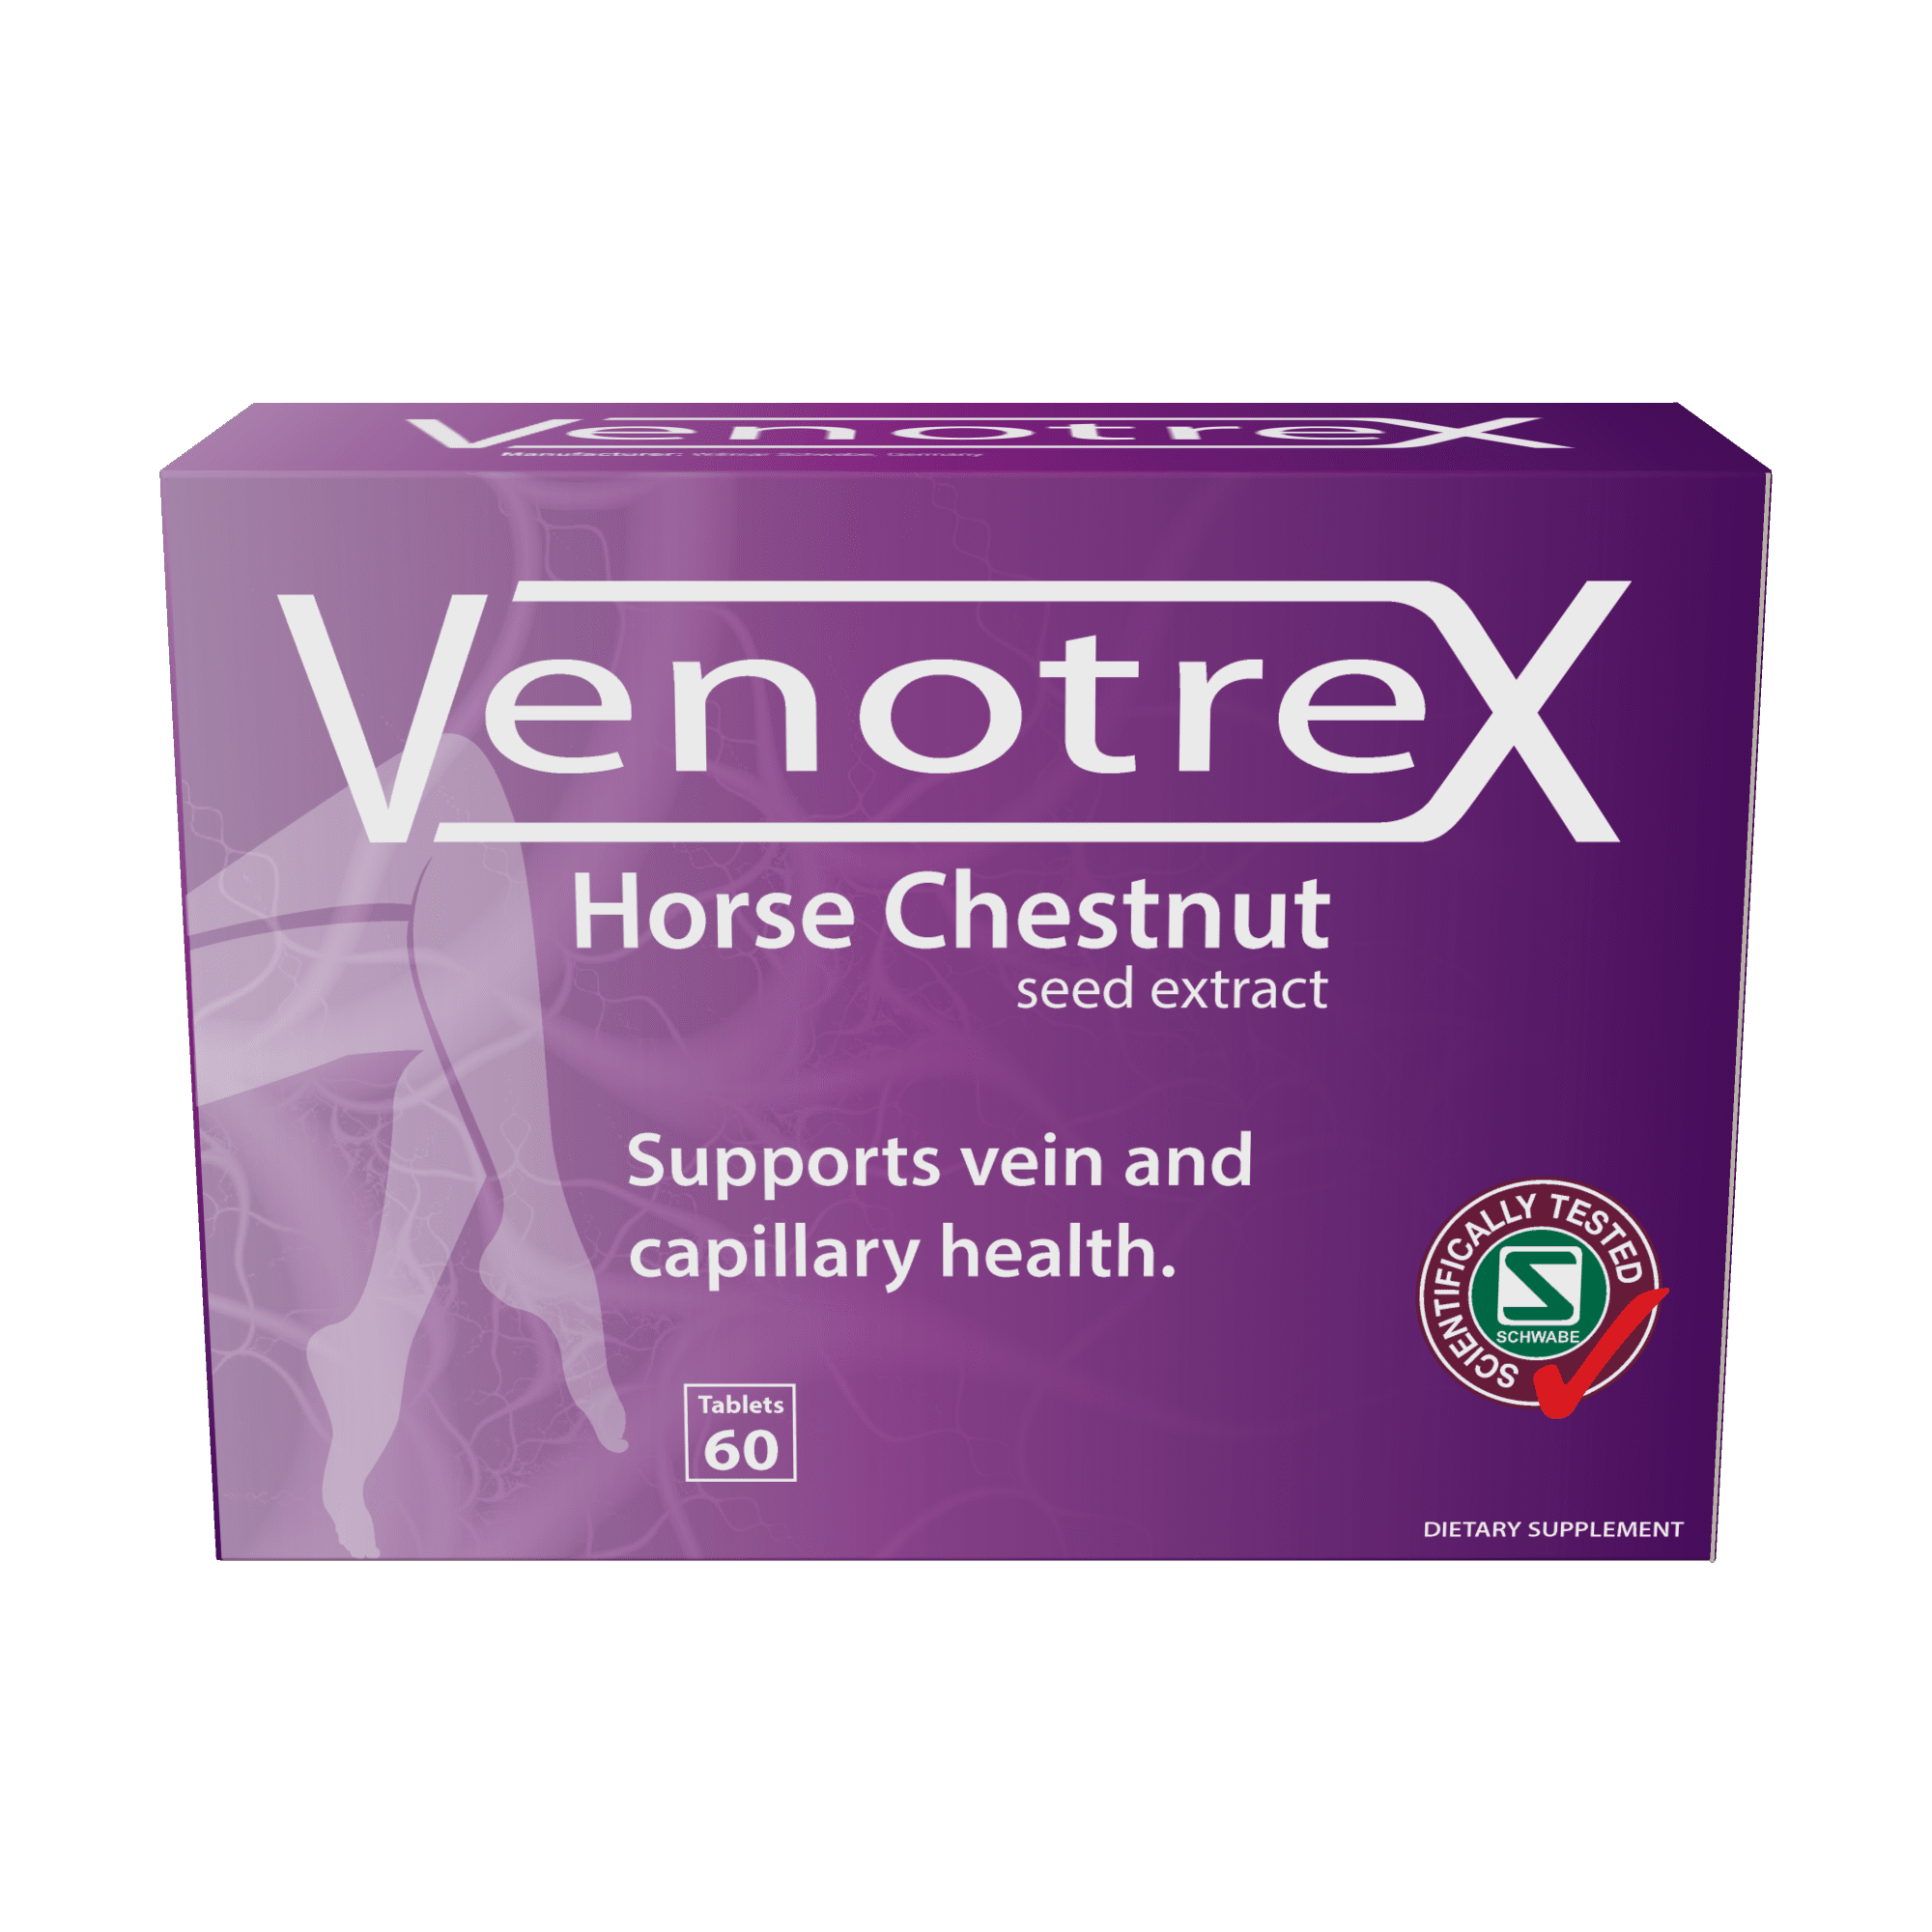 Schwabe Venotrex Horse Chestnut Extract | healthy.co.nz